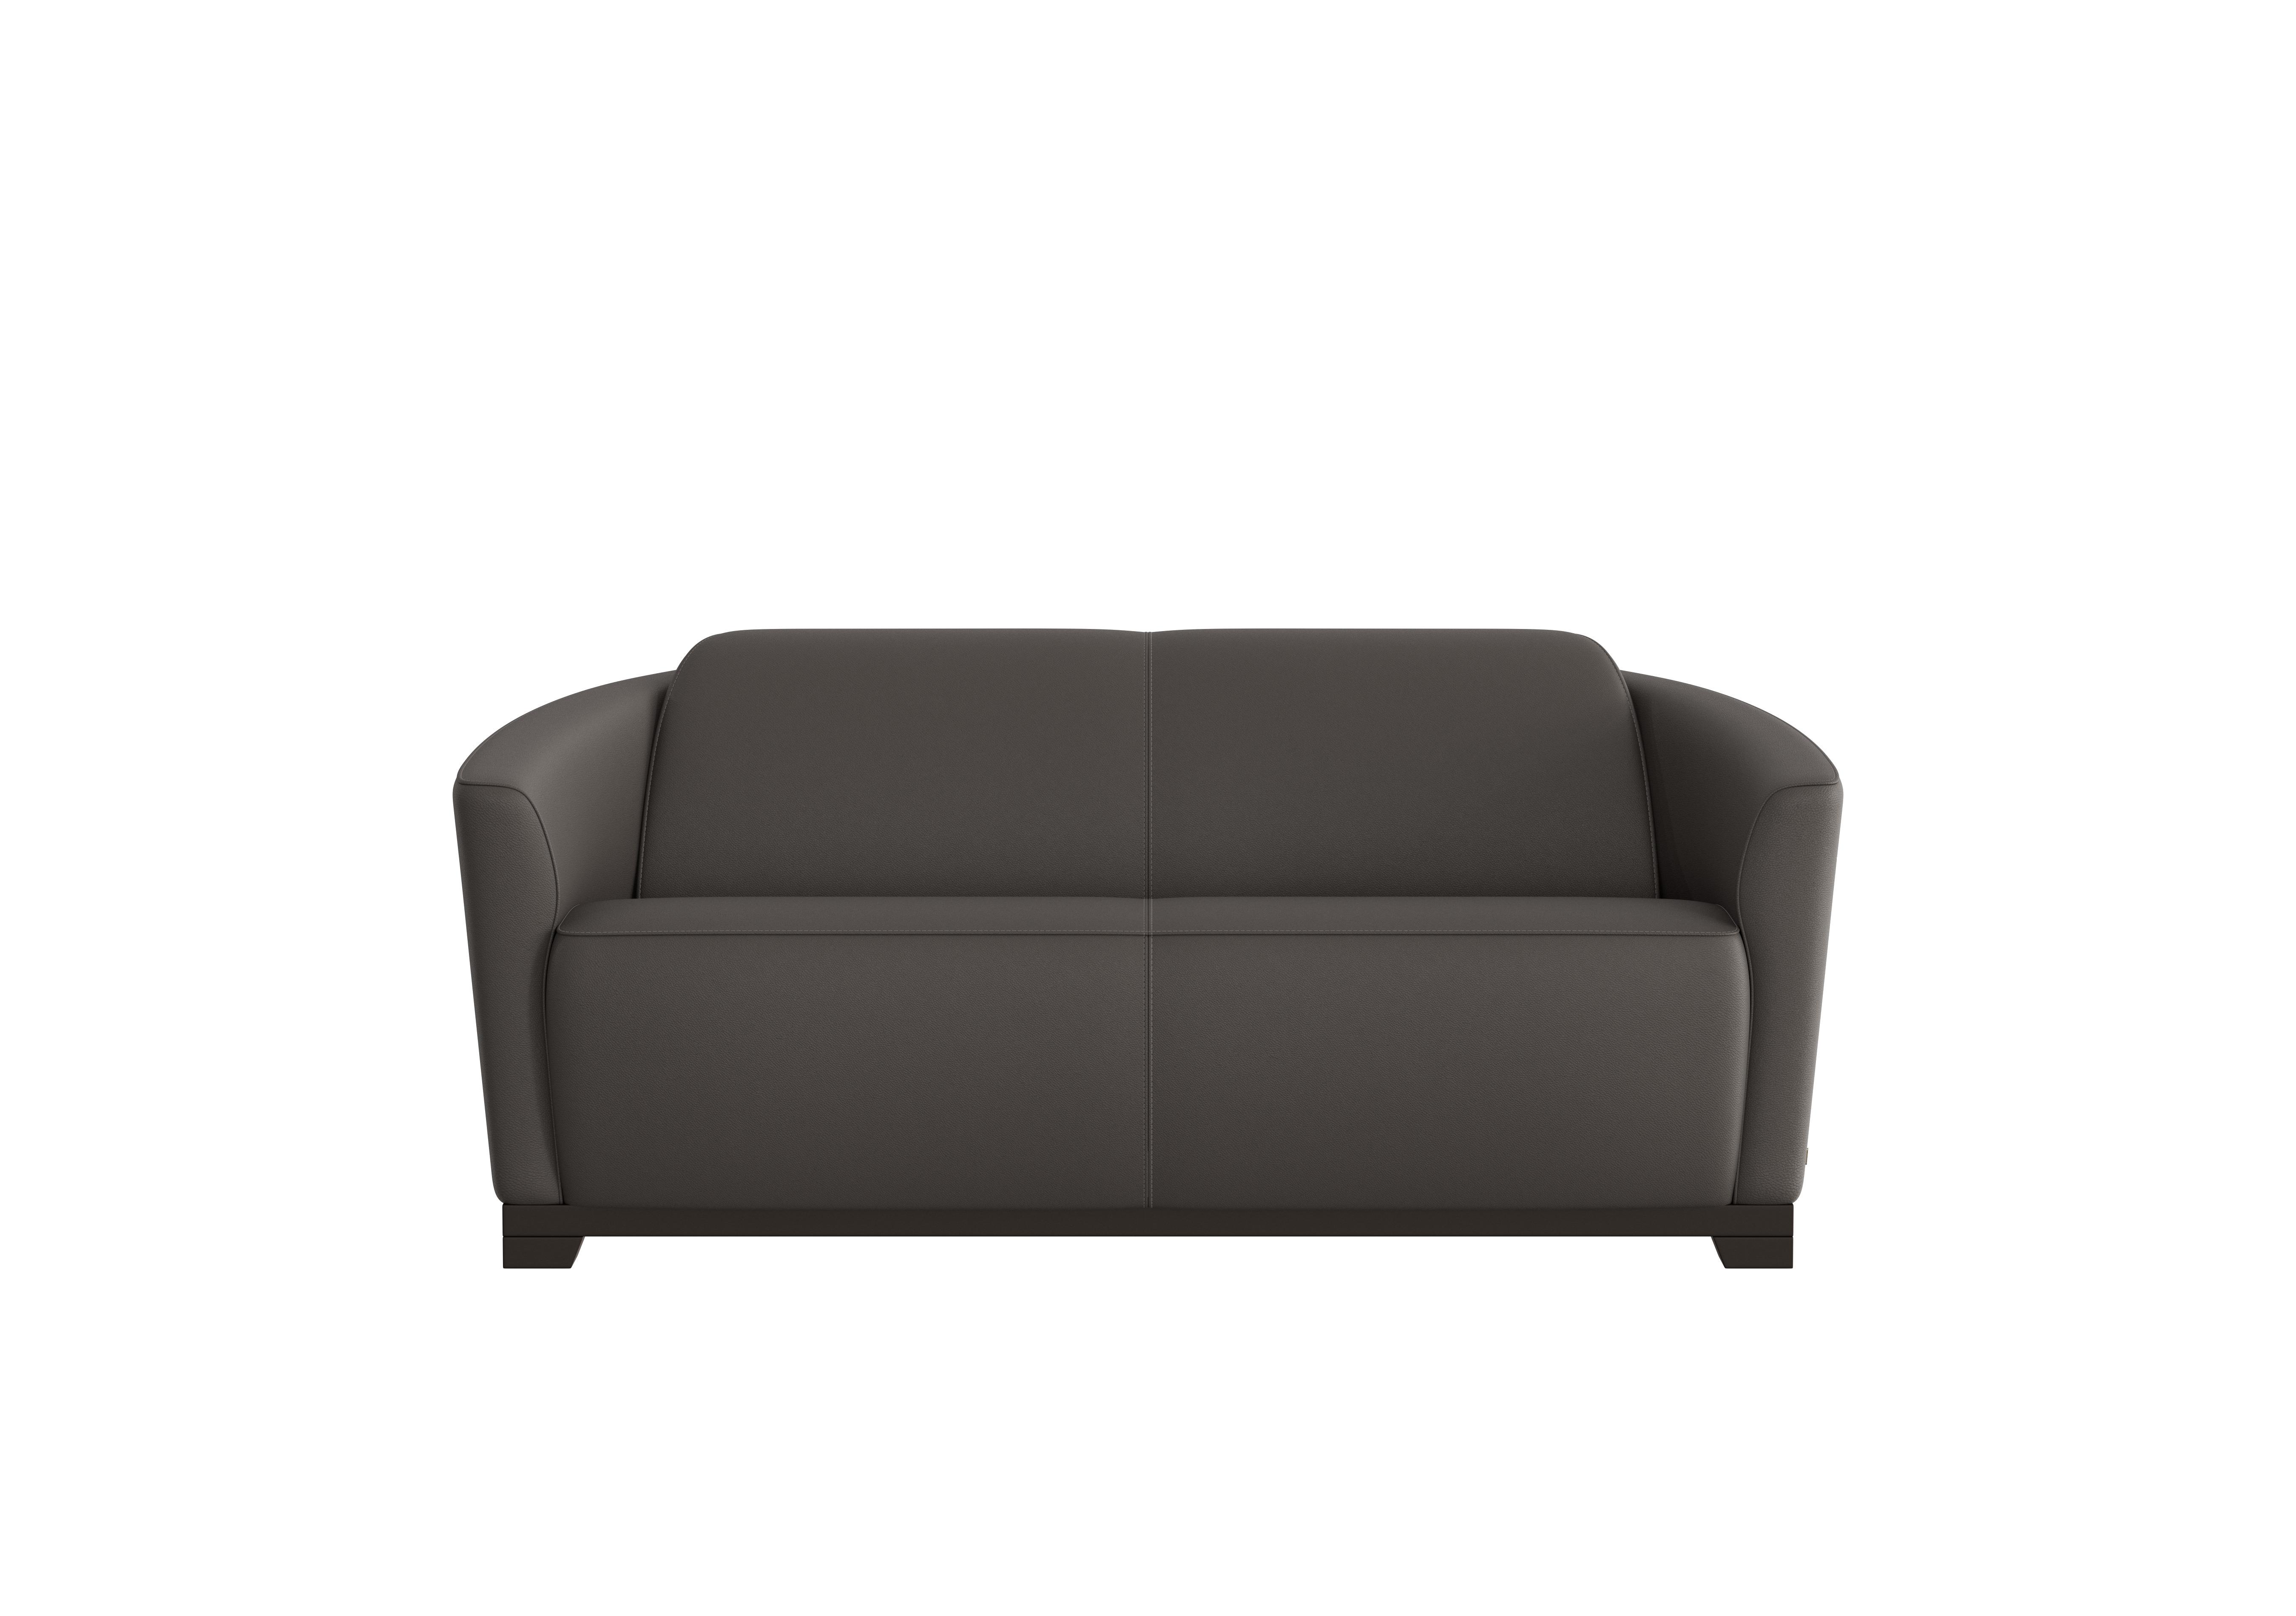 Ketty 2.5 Seater Leather Sofa in Torello Grigio Scuro 327 on Furniture Village